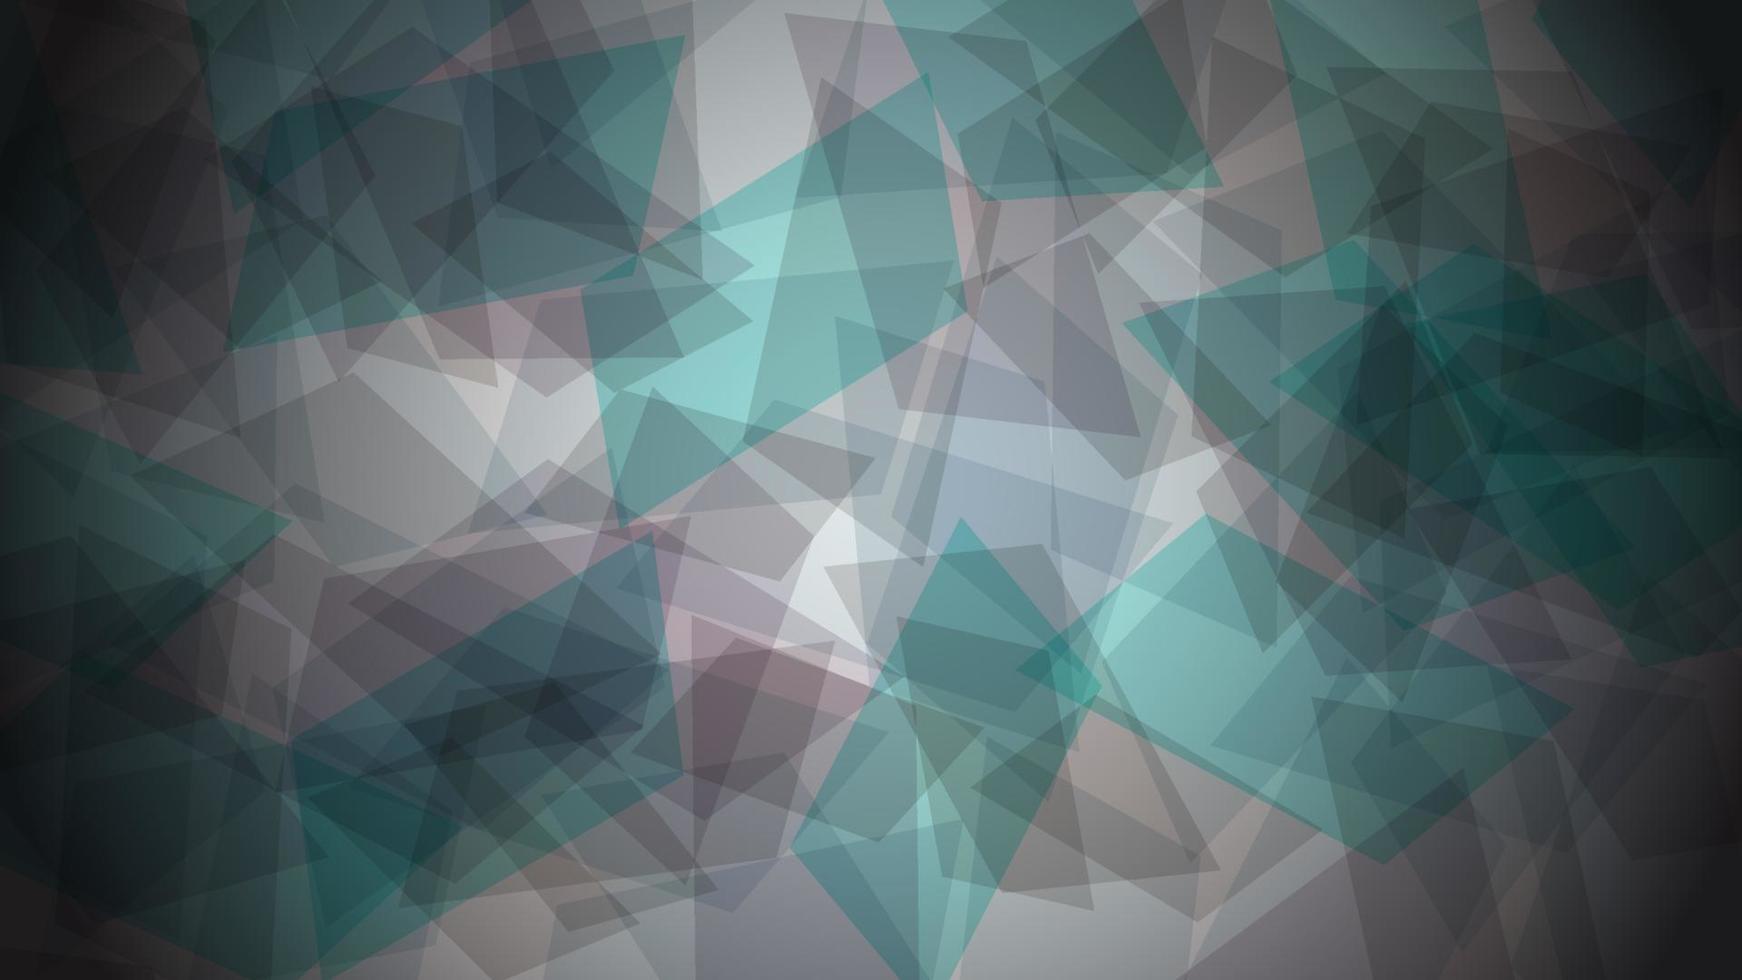 bunte Fliese, quadratischer Mosaikhintergrund. moderne abstrakte Farbverlaufskarte. geometrisches Geschäftsplakat. vektor